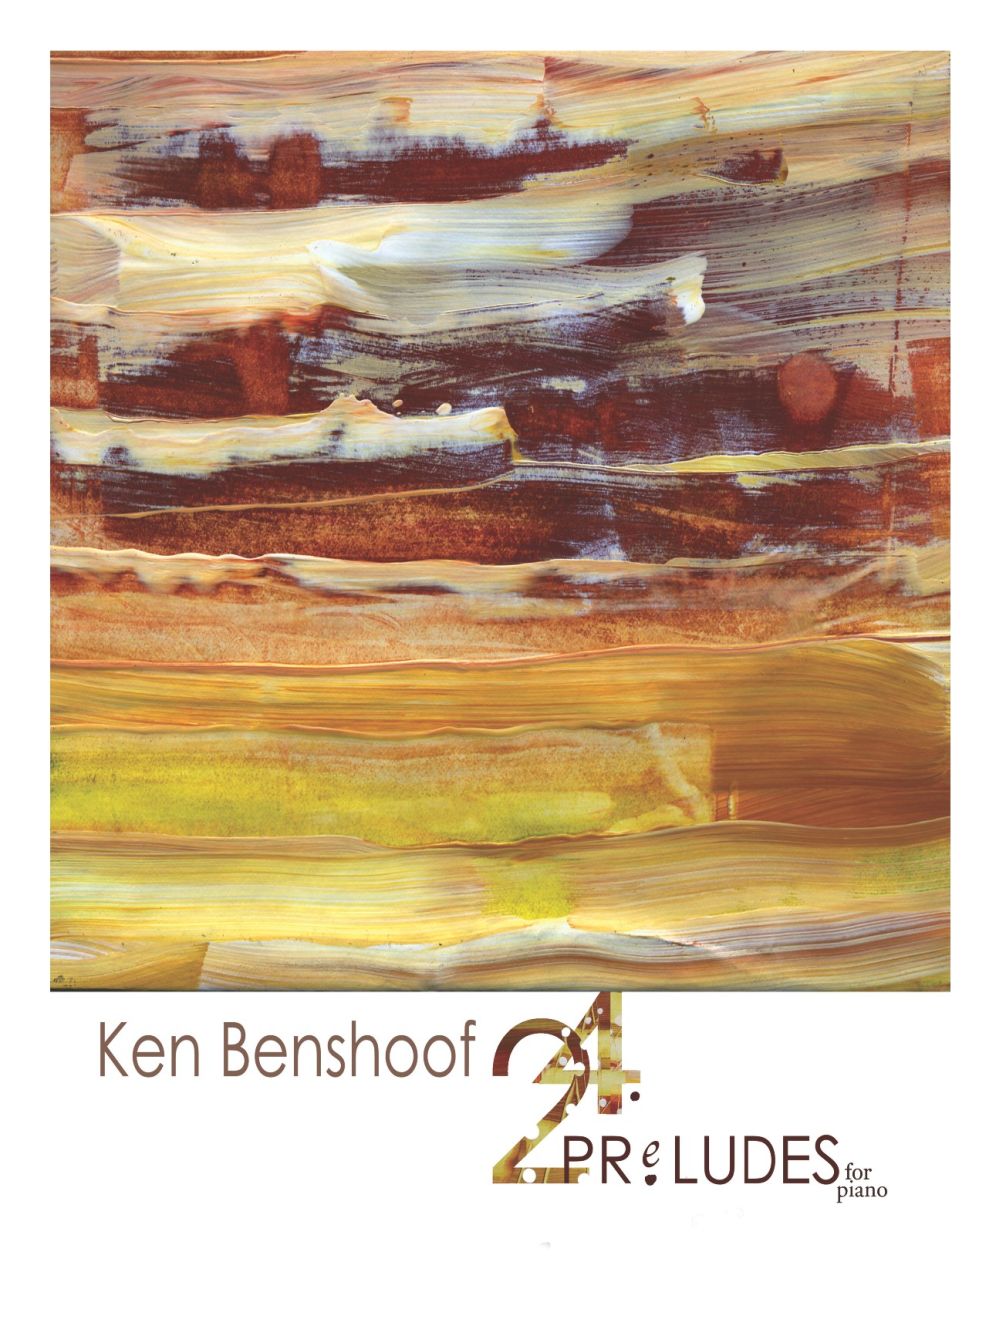 24 Preludes For Piano Solo (BENSHOOF KEN)